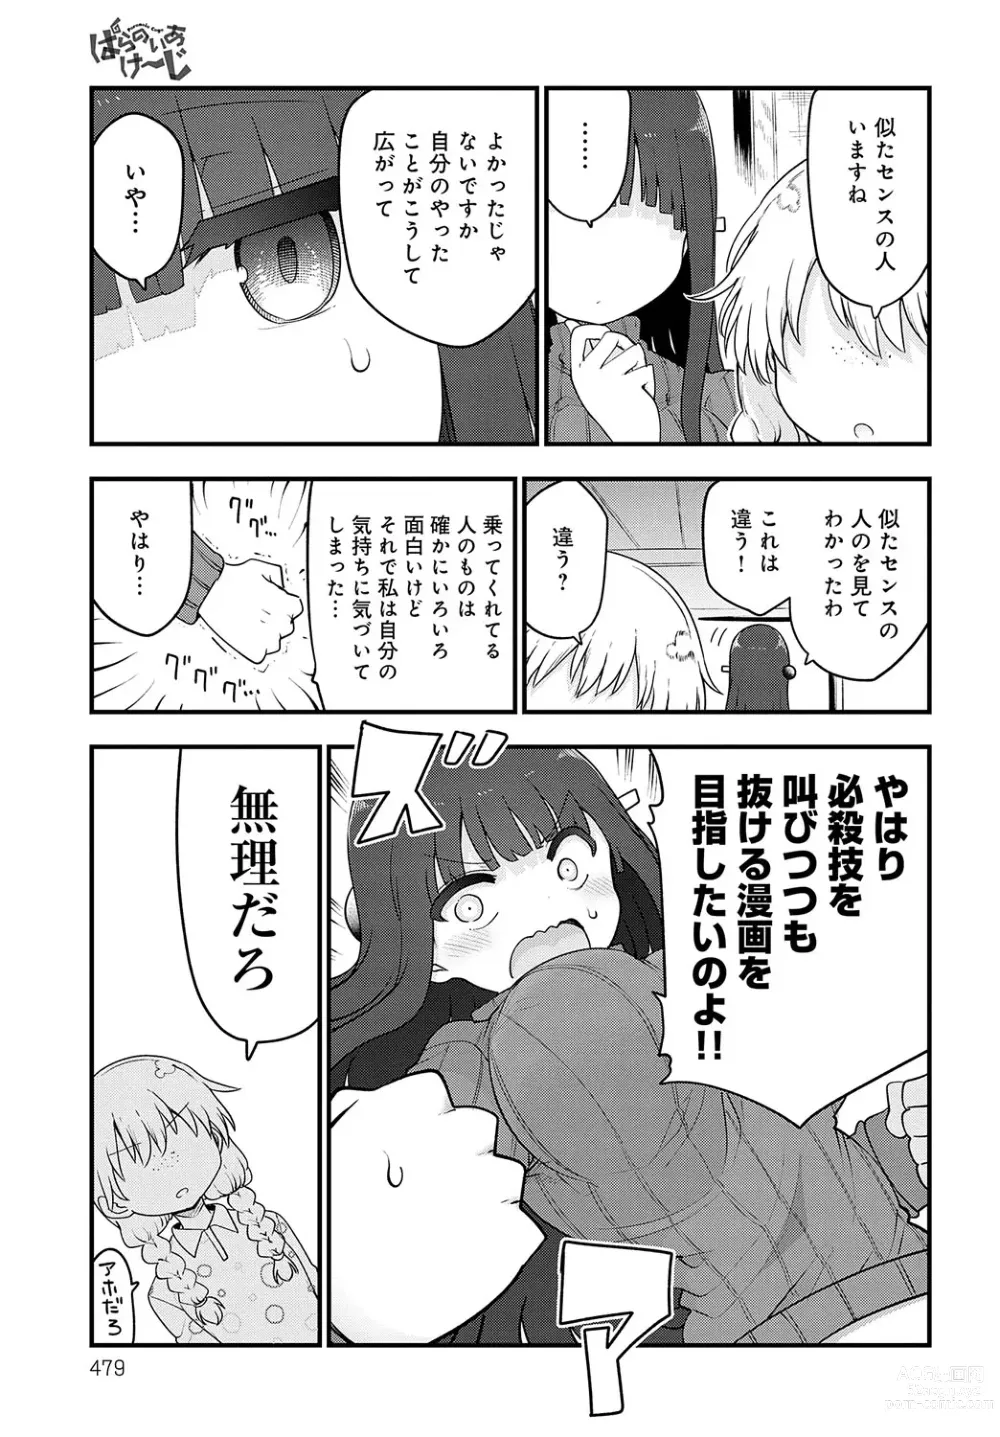 Page 478 of manga COMIC Anthurium 2023-07